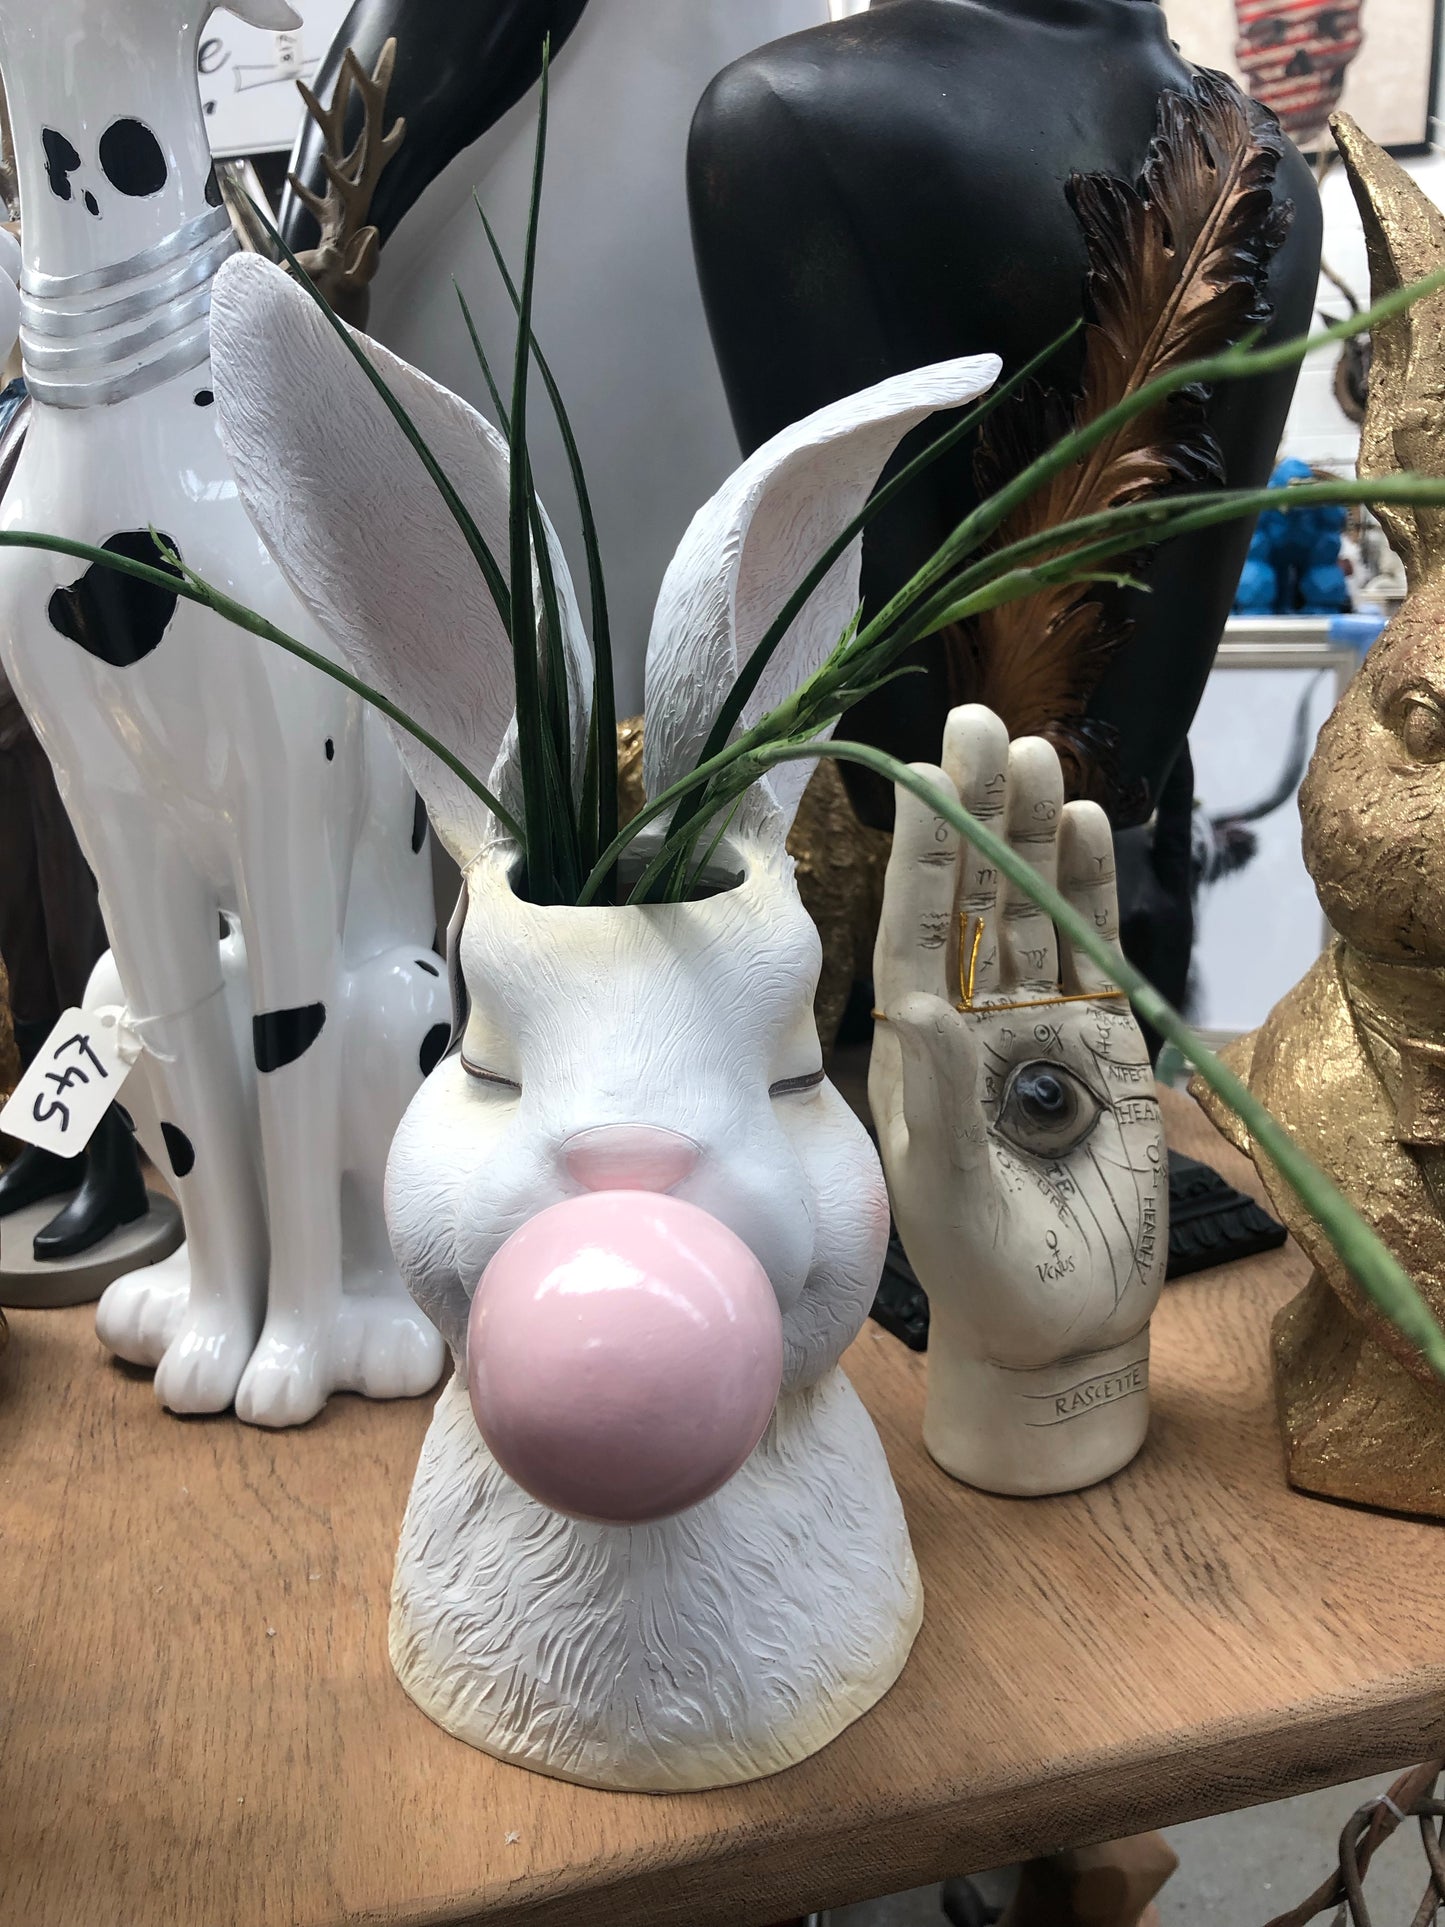 Bunny Vase